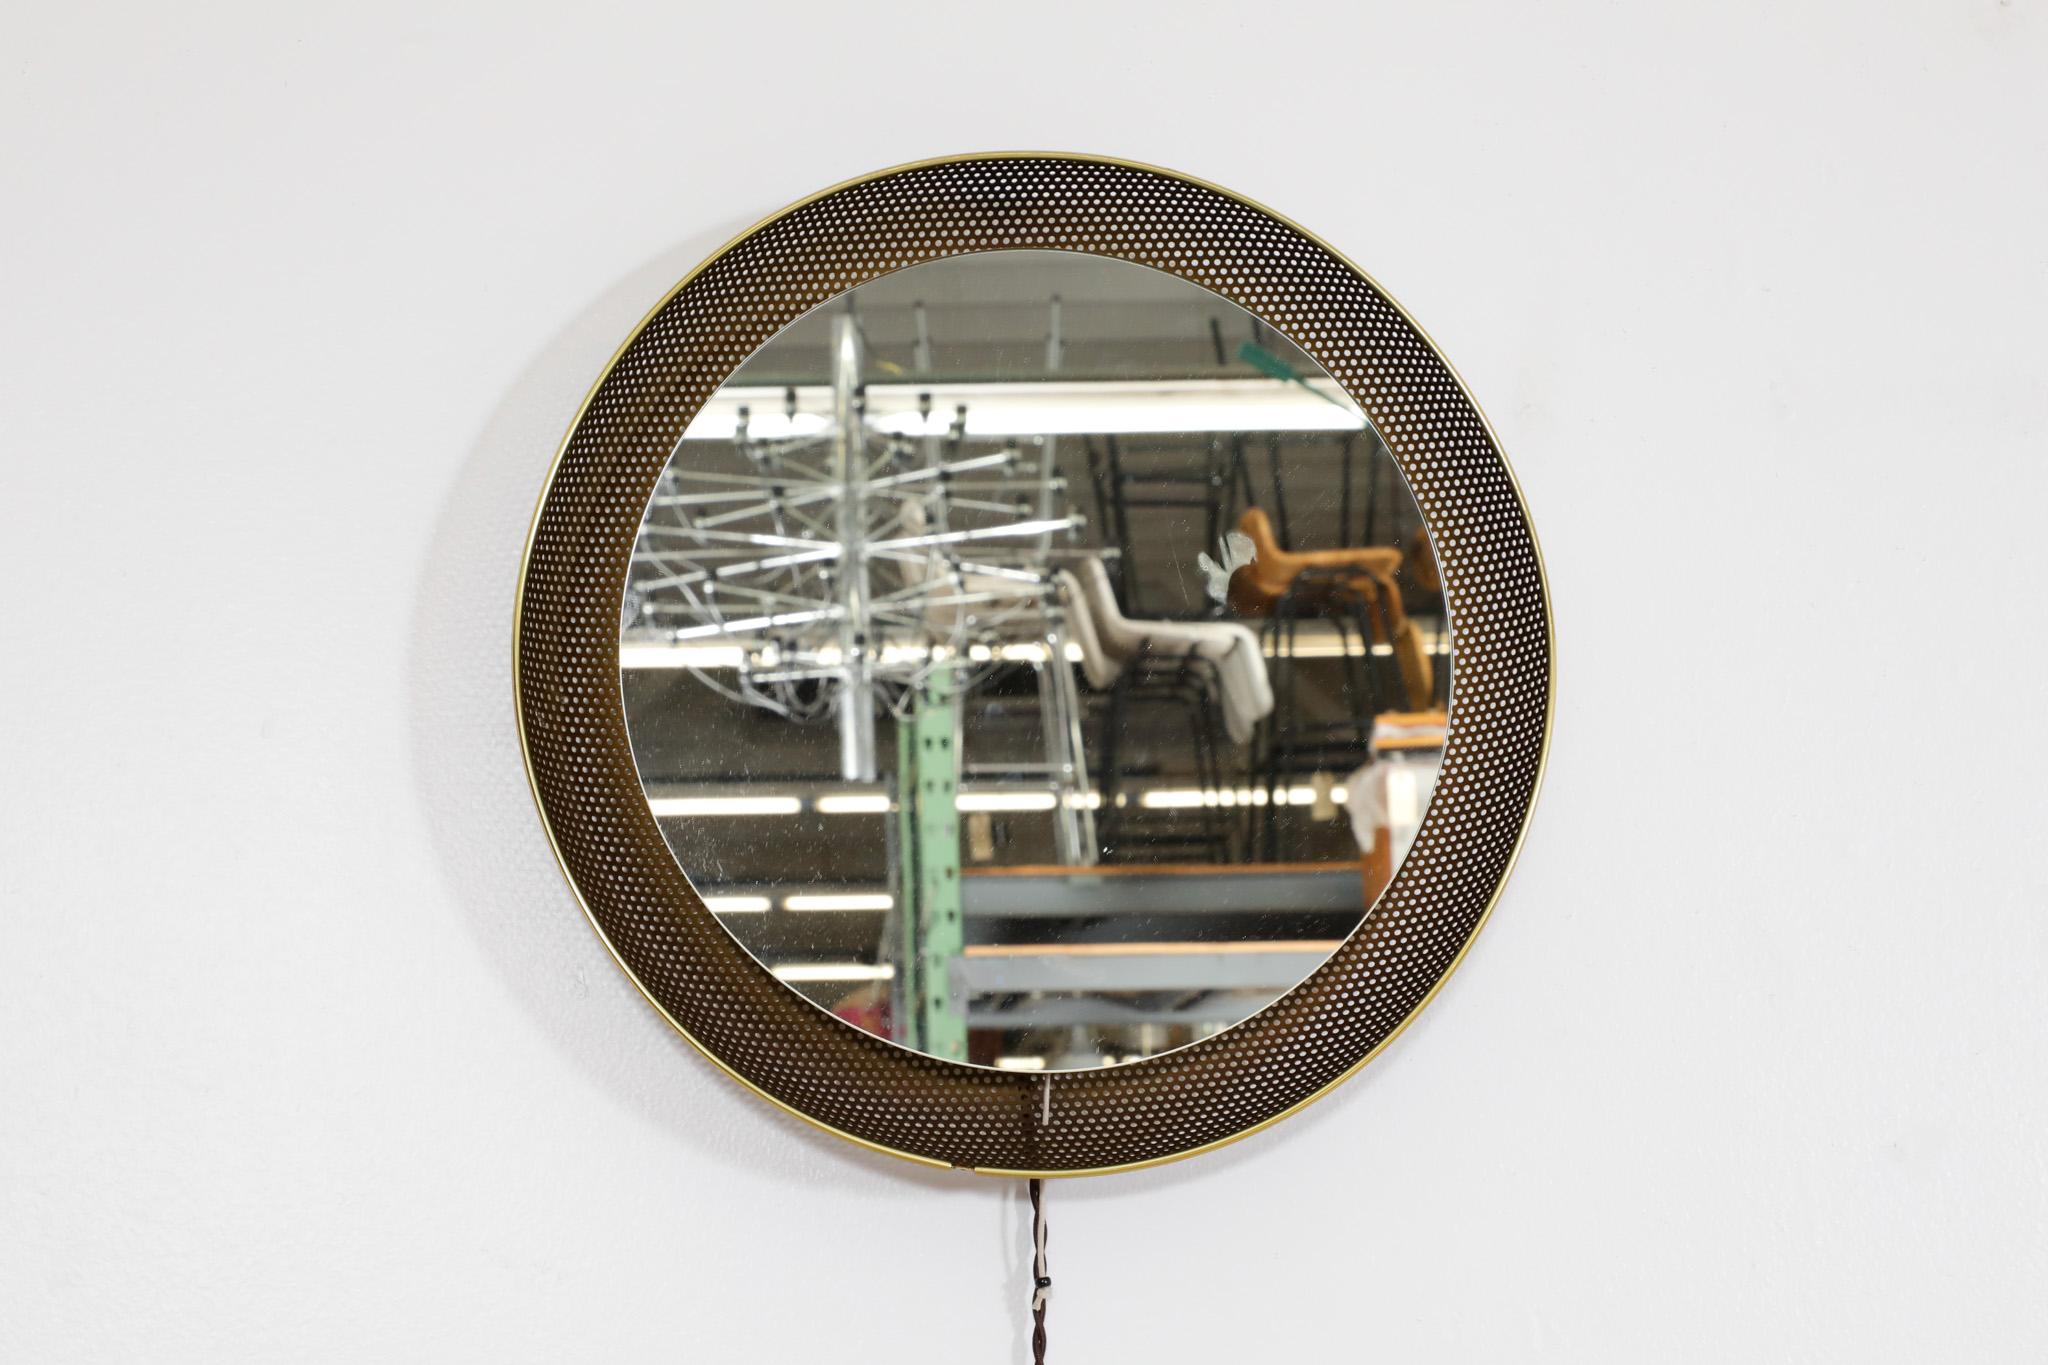 Miroir rétro-éclairé doré inspiré de Mathieu Mategot avec cadre en métal perforé émaillé violet, garniture en laiton et interrupteur à tirette. Fabriqué par la société néerlandaise Artimeta. En état d'origine avec une usure normale pour son âge et